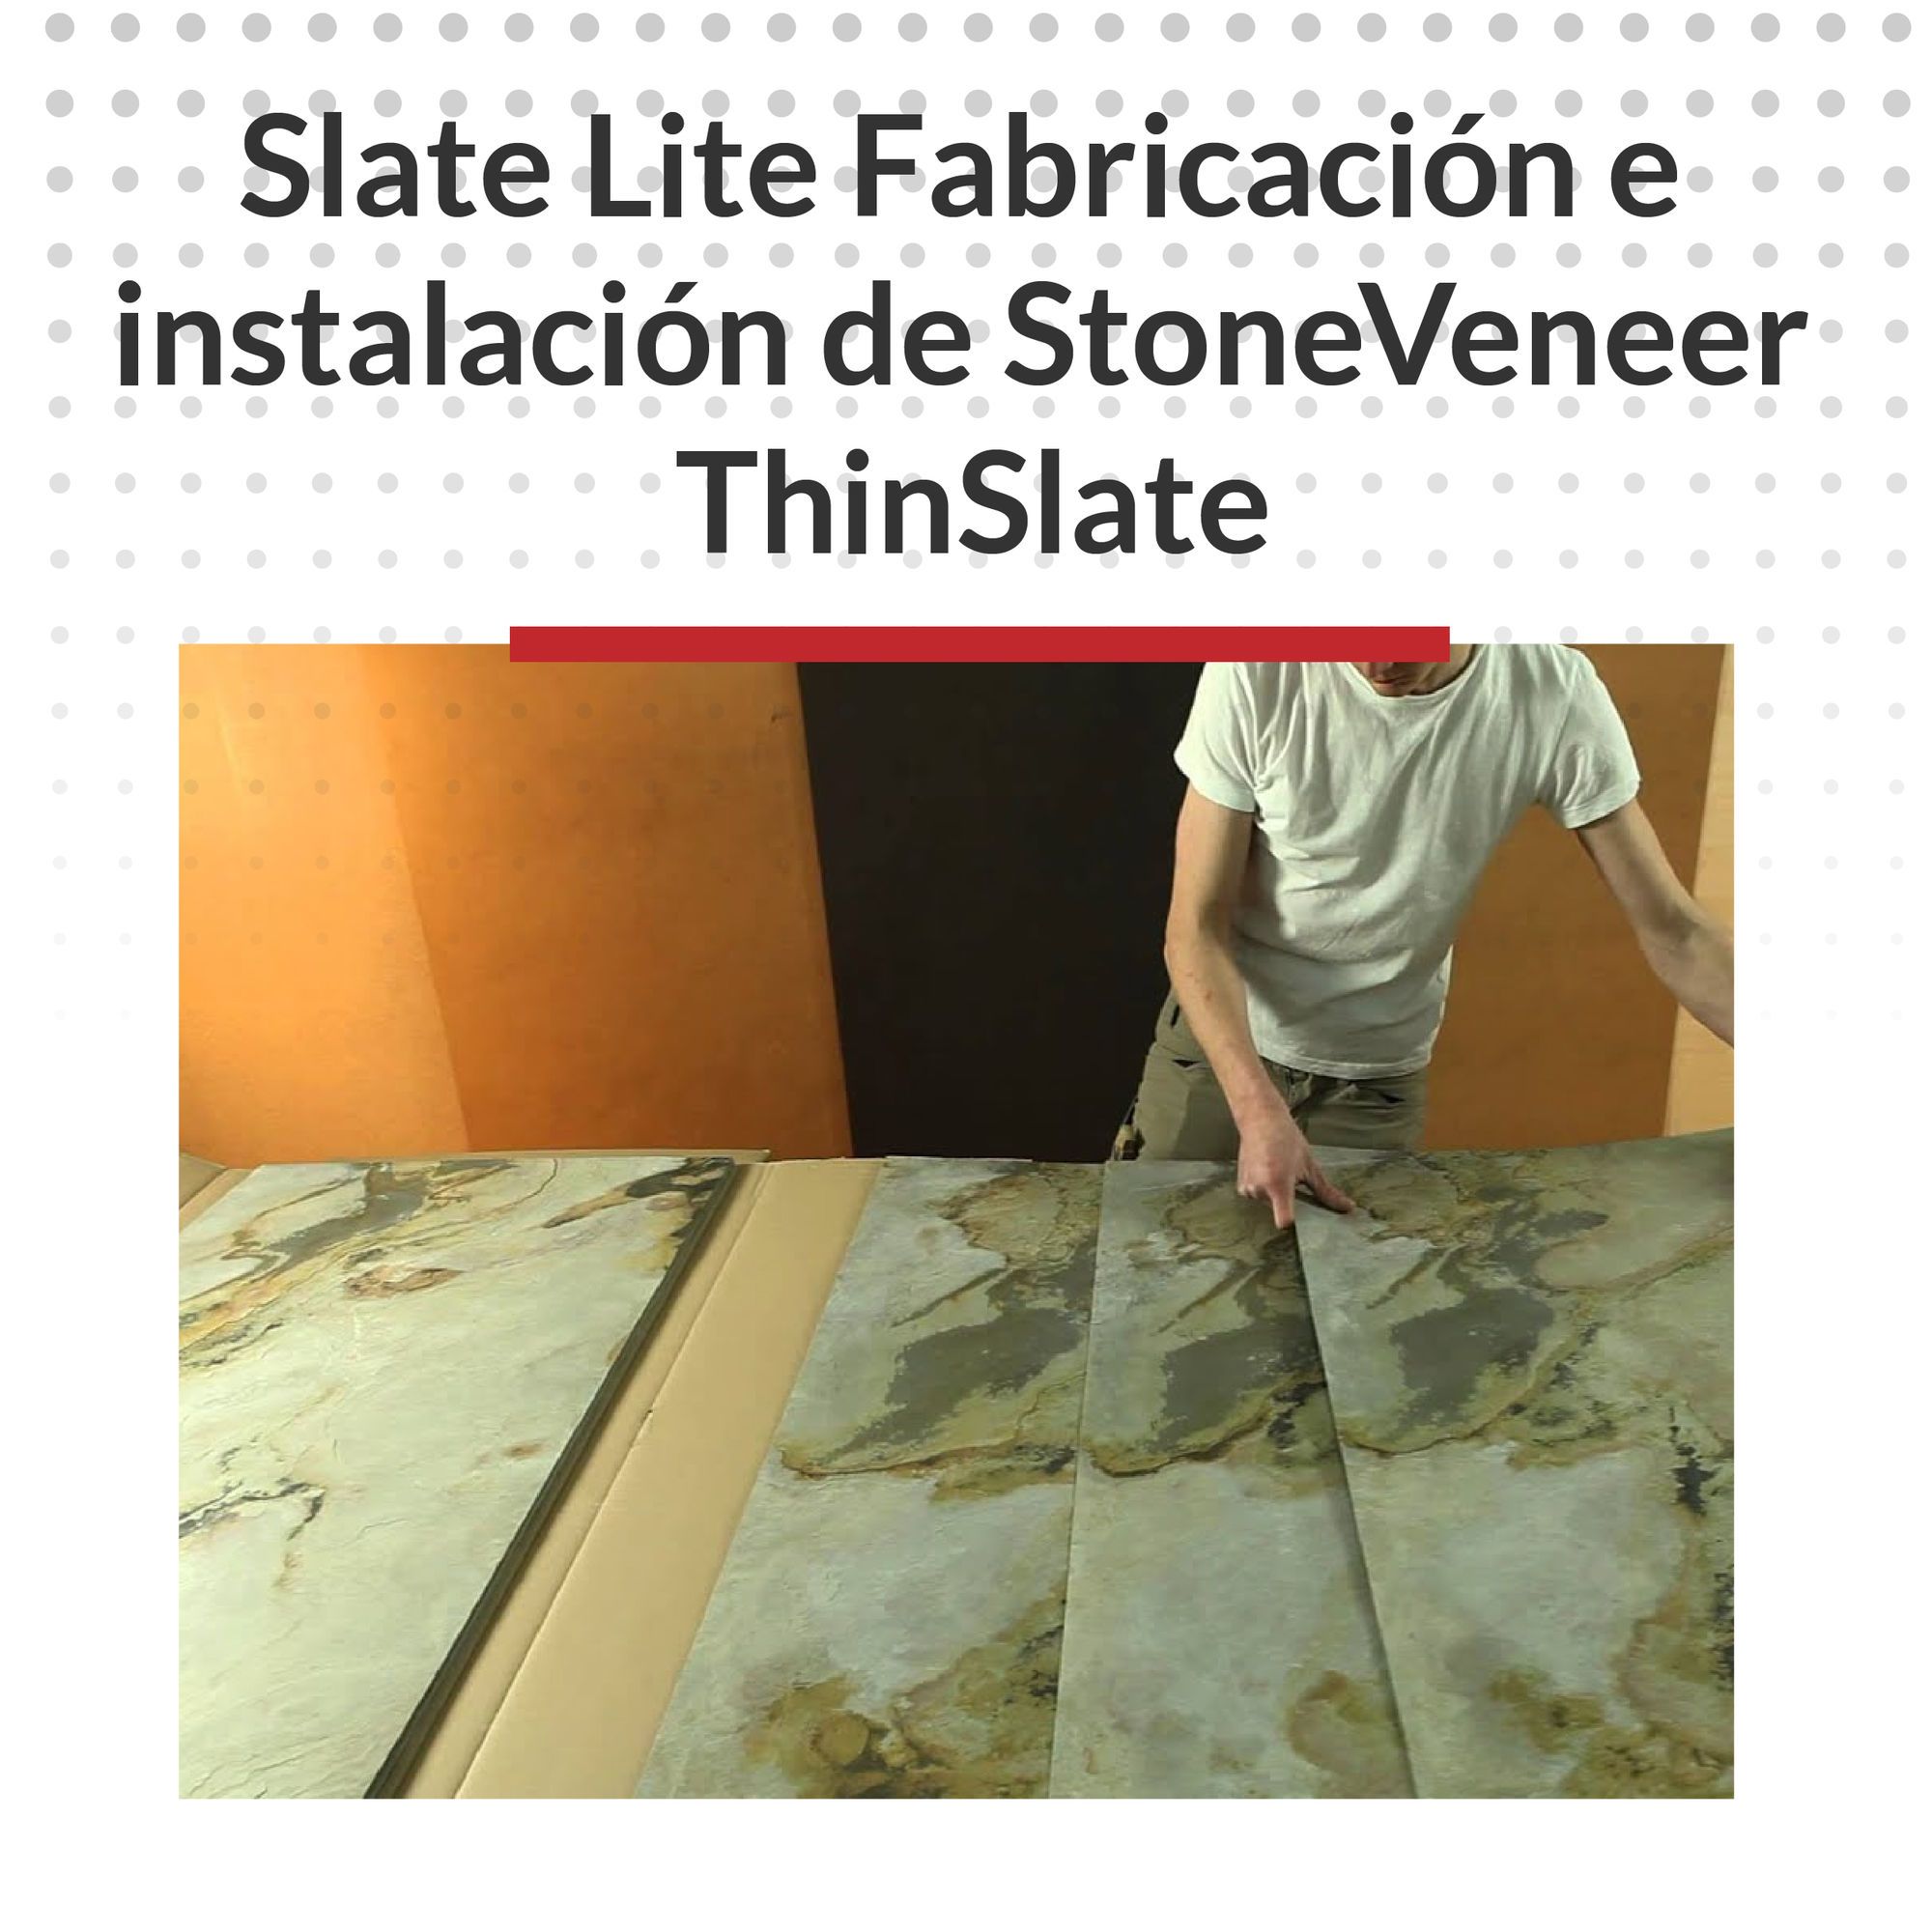 Slate Lite Fabricación e instalación de StoneVeneer ThinSlate